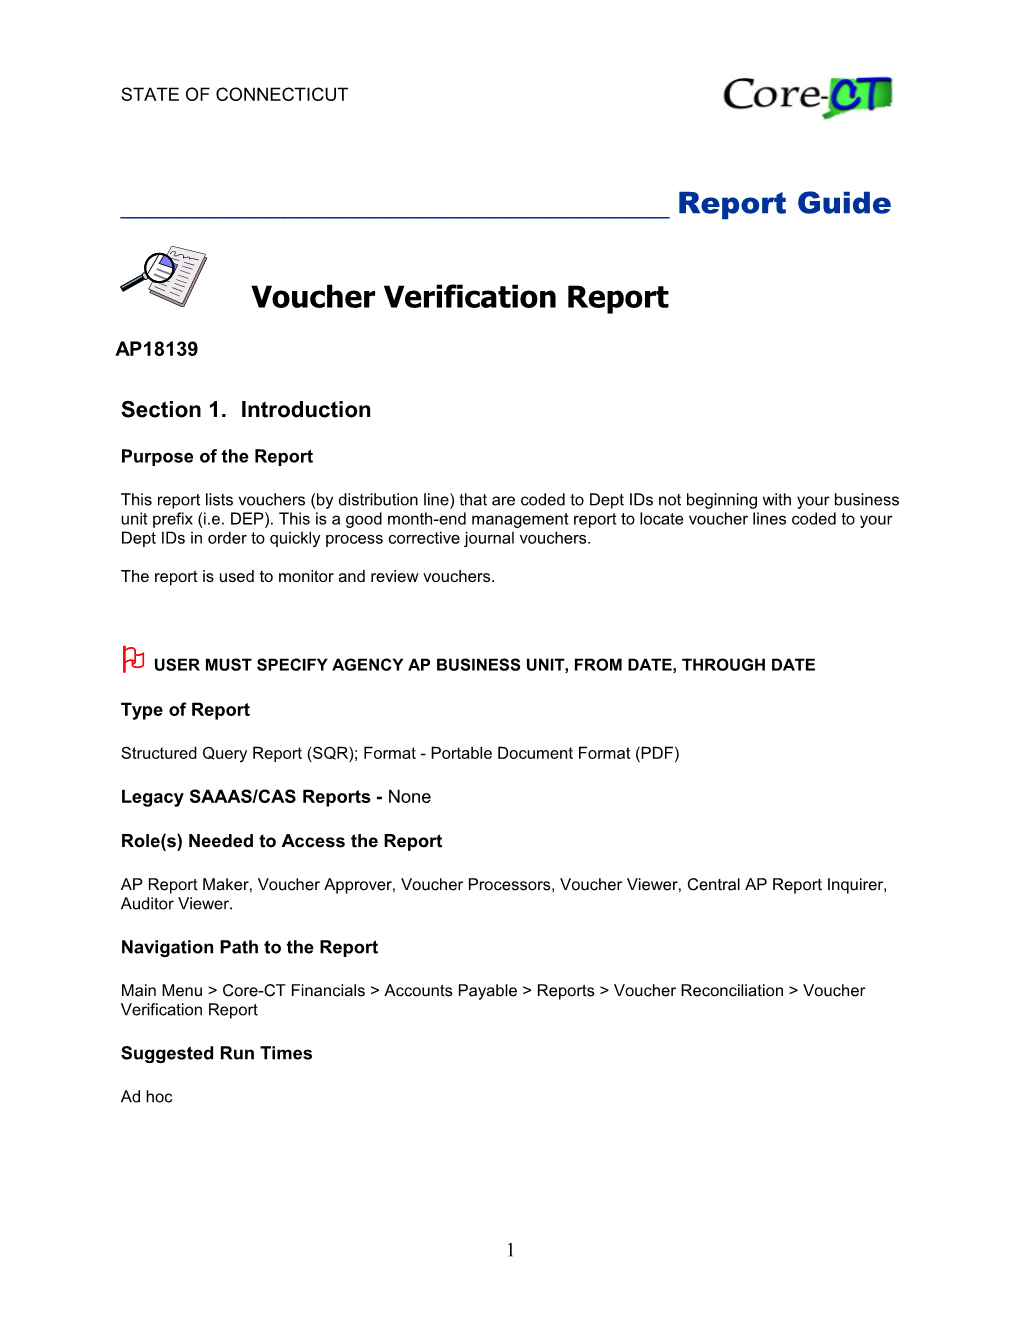 Voucher Verification Report (AP18139)